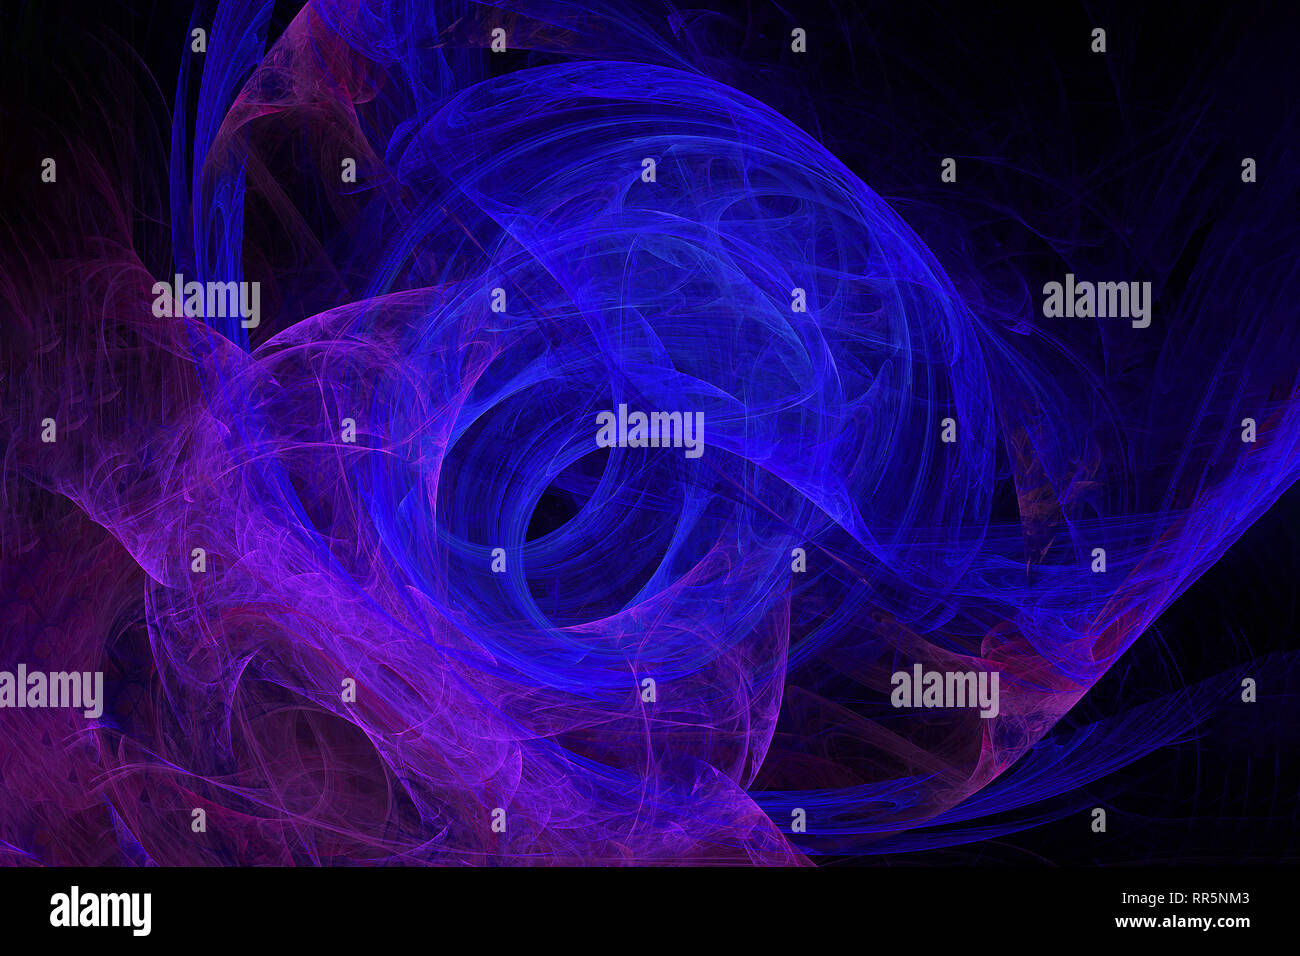 Abstract art fractal une naissance d'une planète bleue Banque D'Images